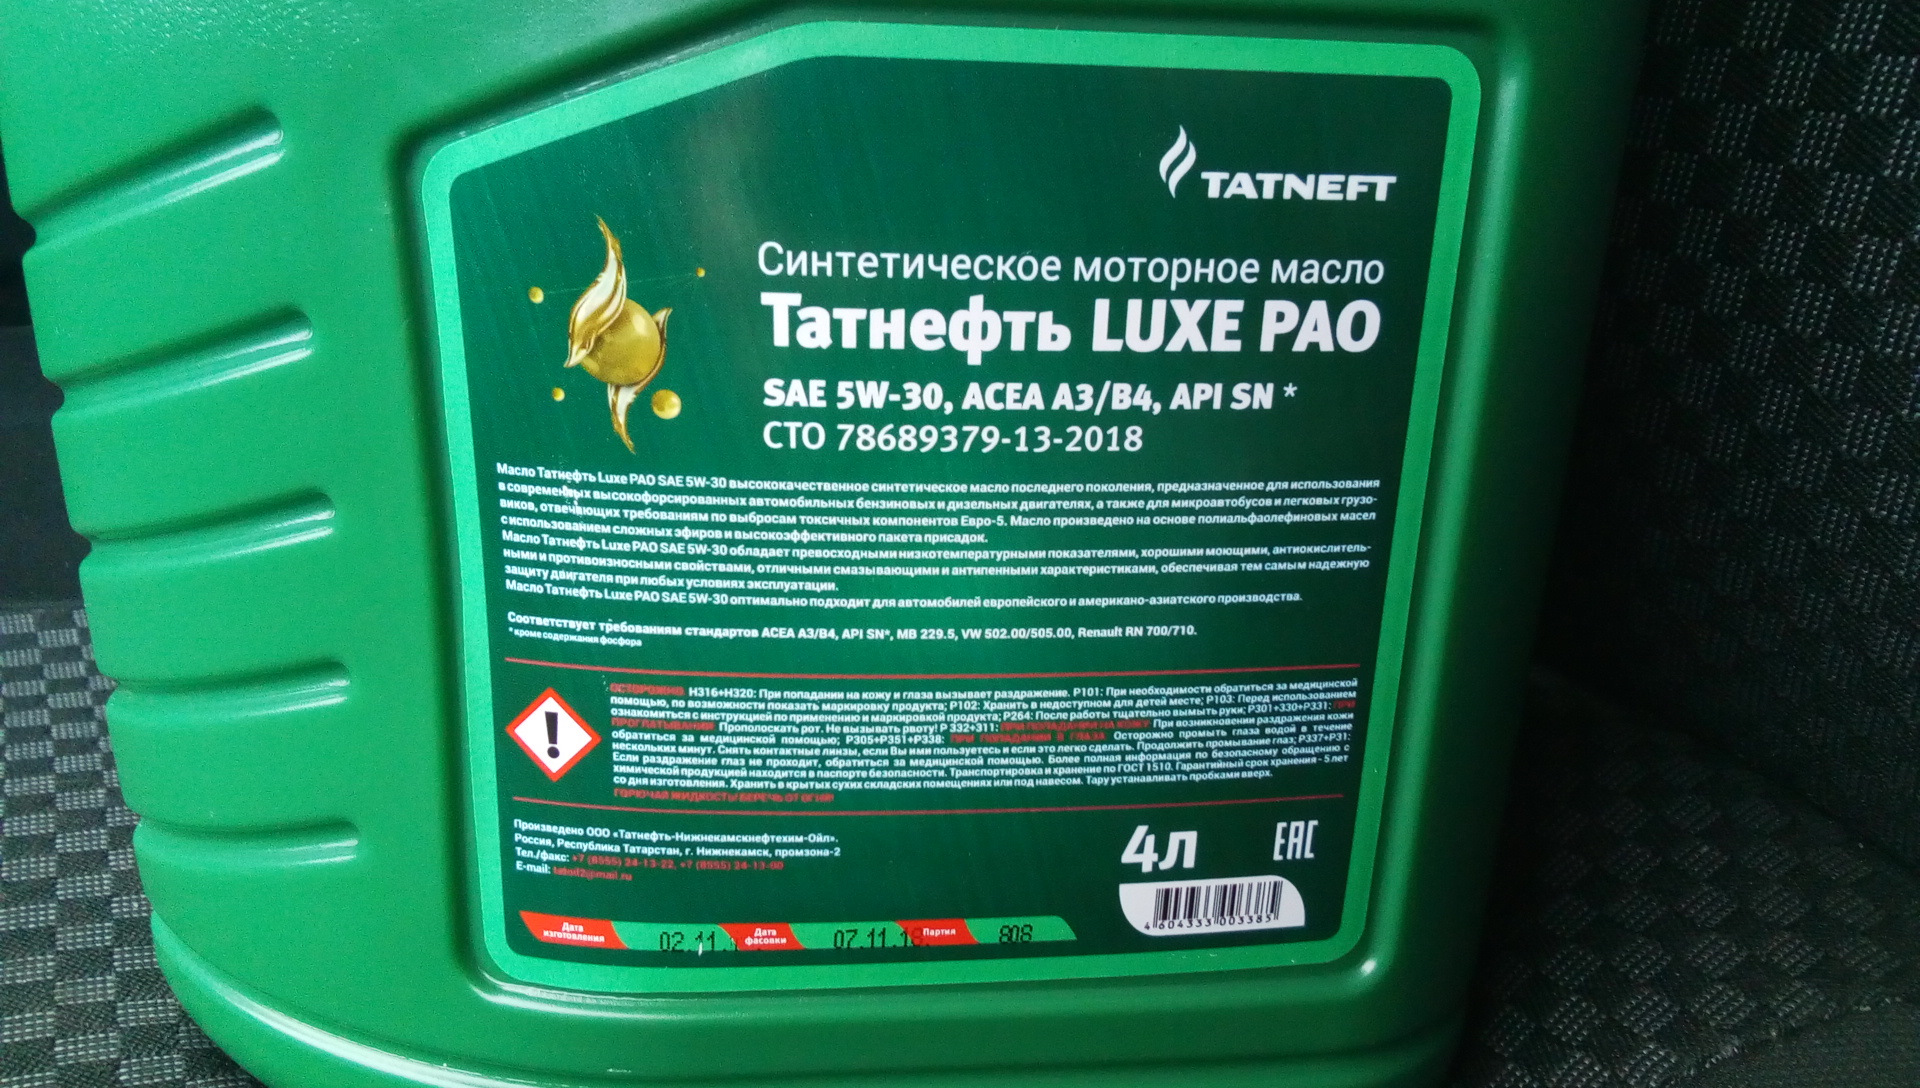 Татнефть масло 5w 30. Татнефть Luxe 5w-30. Масло TATNEFT Luxe 5w30. TATNEFT Luxe Pao 5w30. Татнефть масло 5w30 Pao.